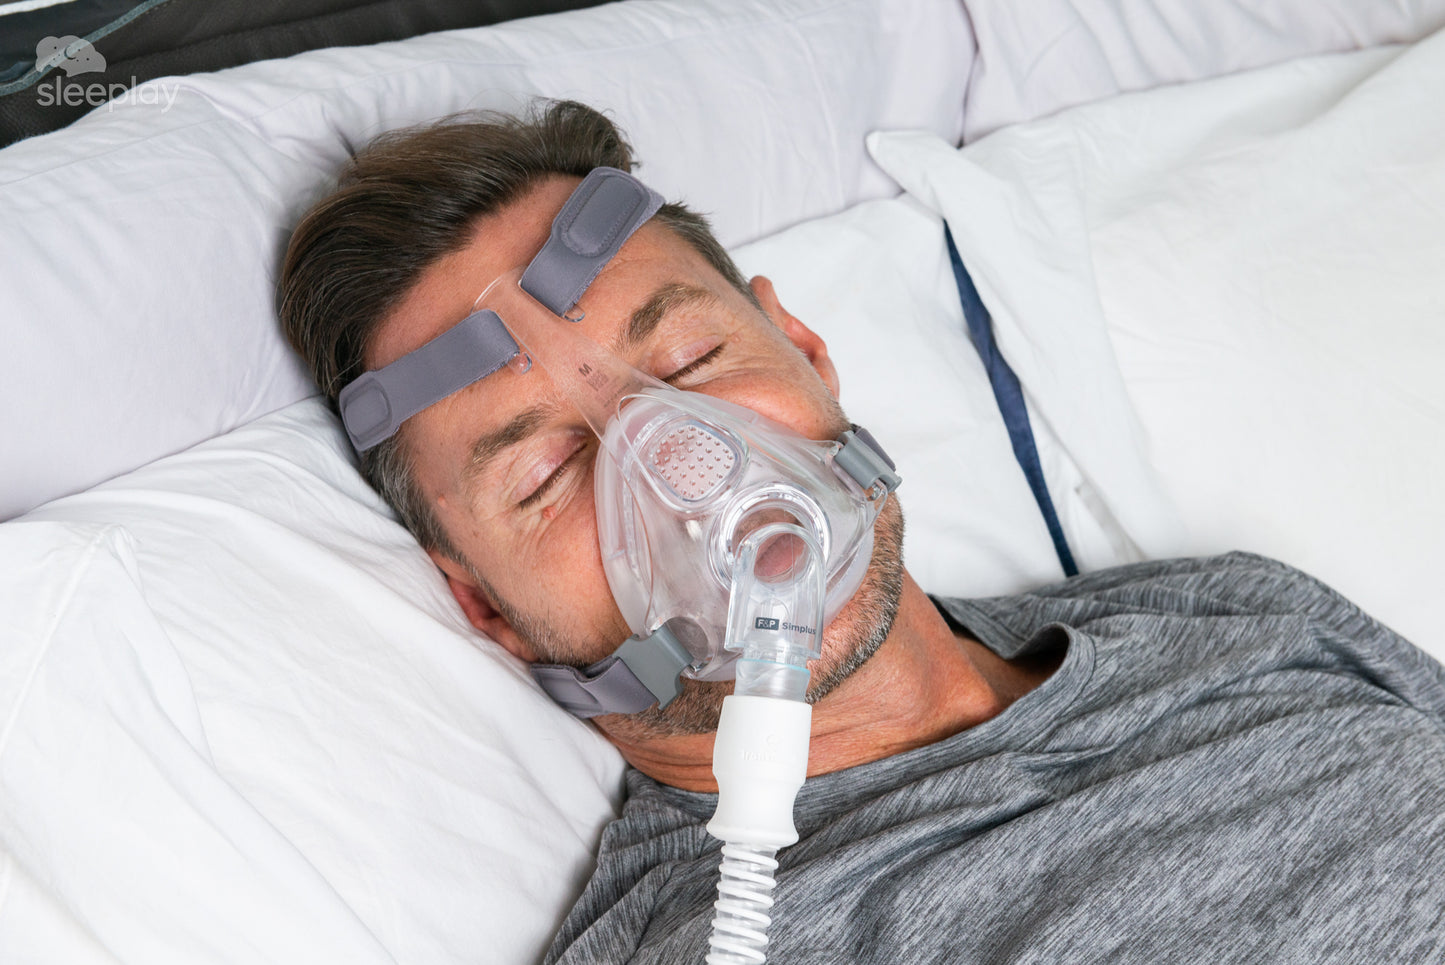 Sleeping with Simplus CPAP mask.